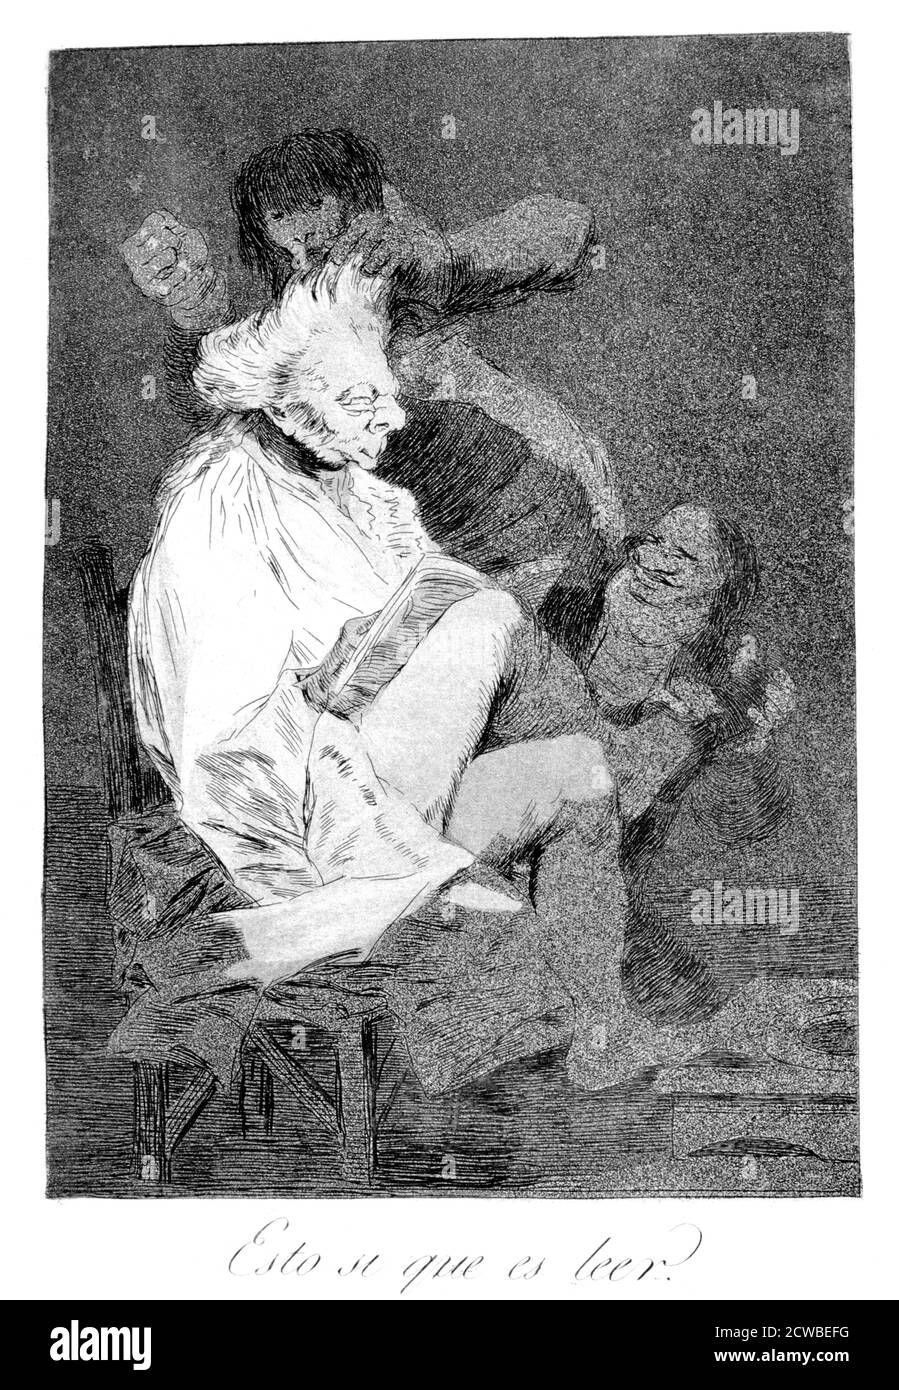 Das ist sicher lesen zu können", 1799 Künstler: Francisco Goya. Platte 29 von 'Los Caprichos'. Los Caprichos erschienen 1799 in einer Zeit der sozialen Repression und Wirtschaftskrise in Spanien.die Serie ist ein Beweis für den politischen Liberalismus und die Abneigung des Künstlers gegen Ignoranz und intellektuelle Unterdrückung. Stockfoto